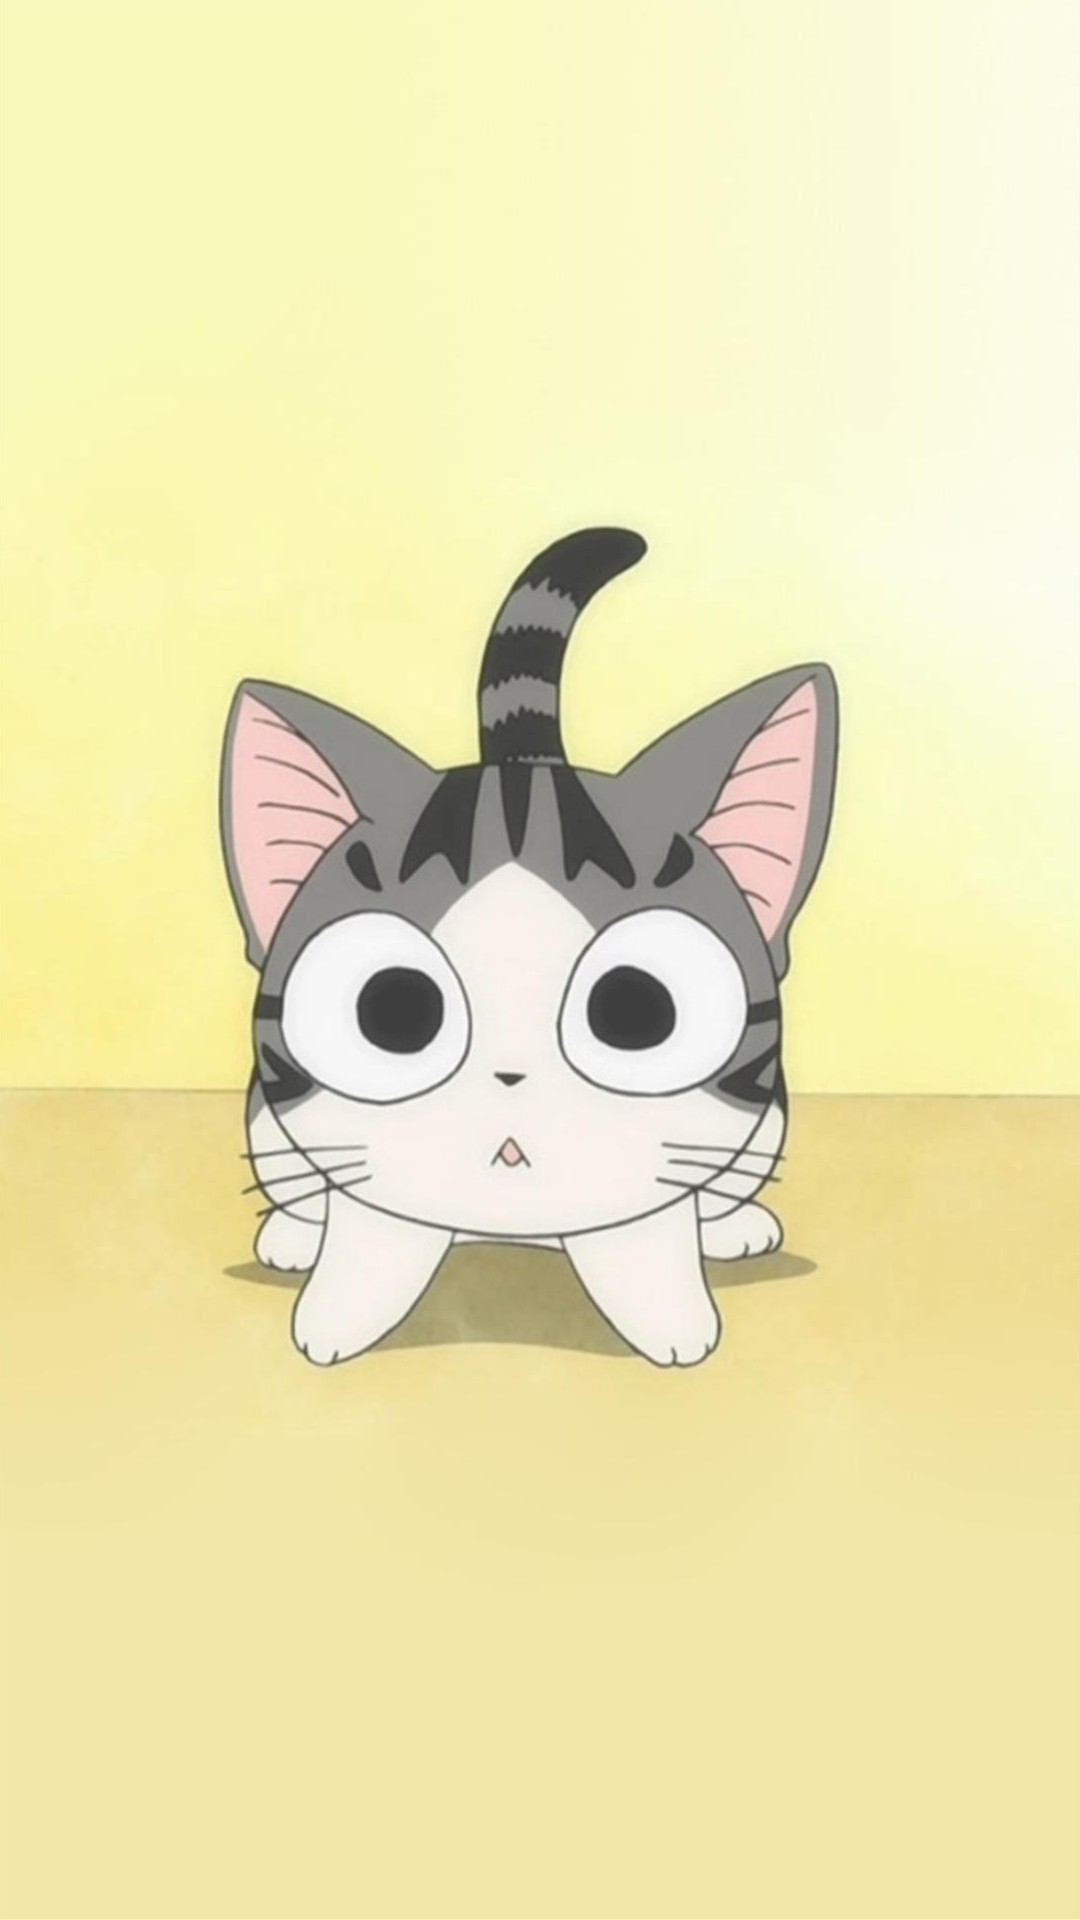 1080x1920 Japanese cute cat